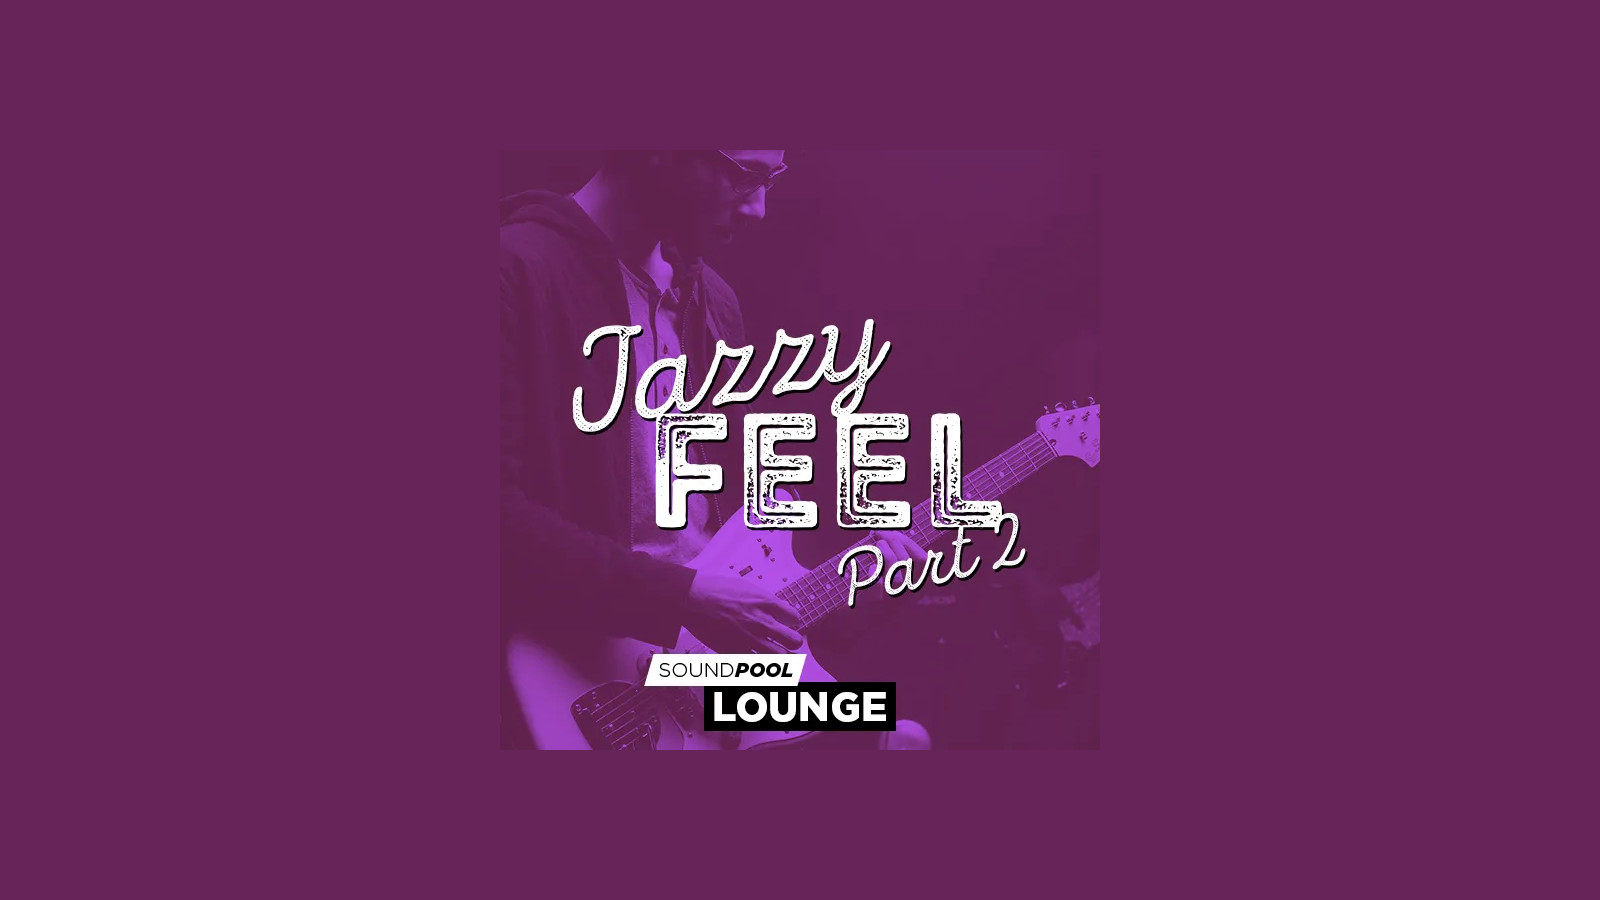 MAGIX Soundpool Jazzy Feel Part 2 ProducerPlanet CD Key [USD 5.65]